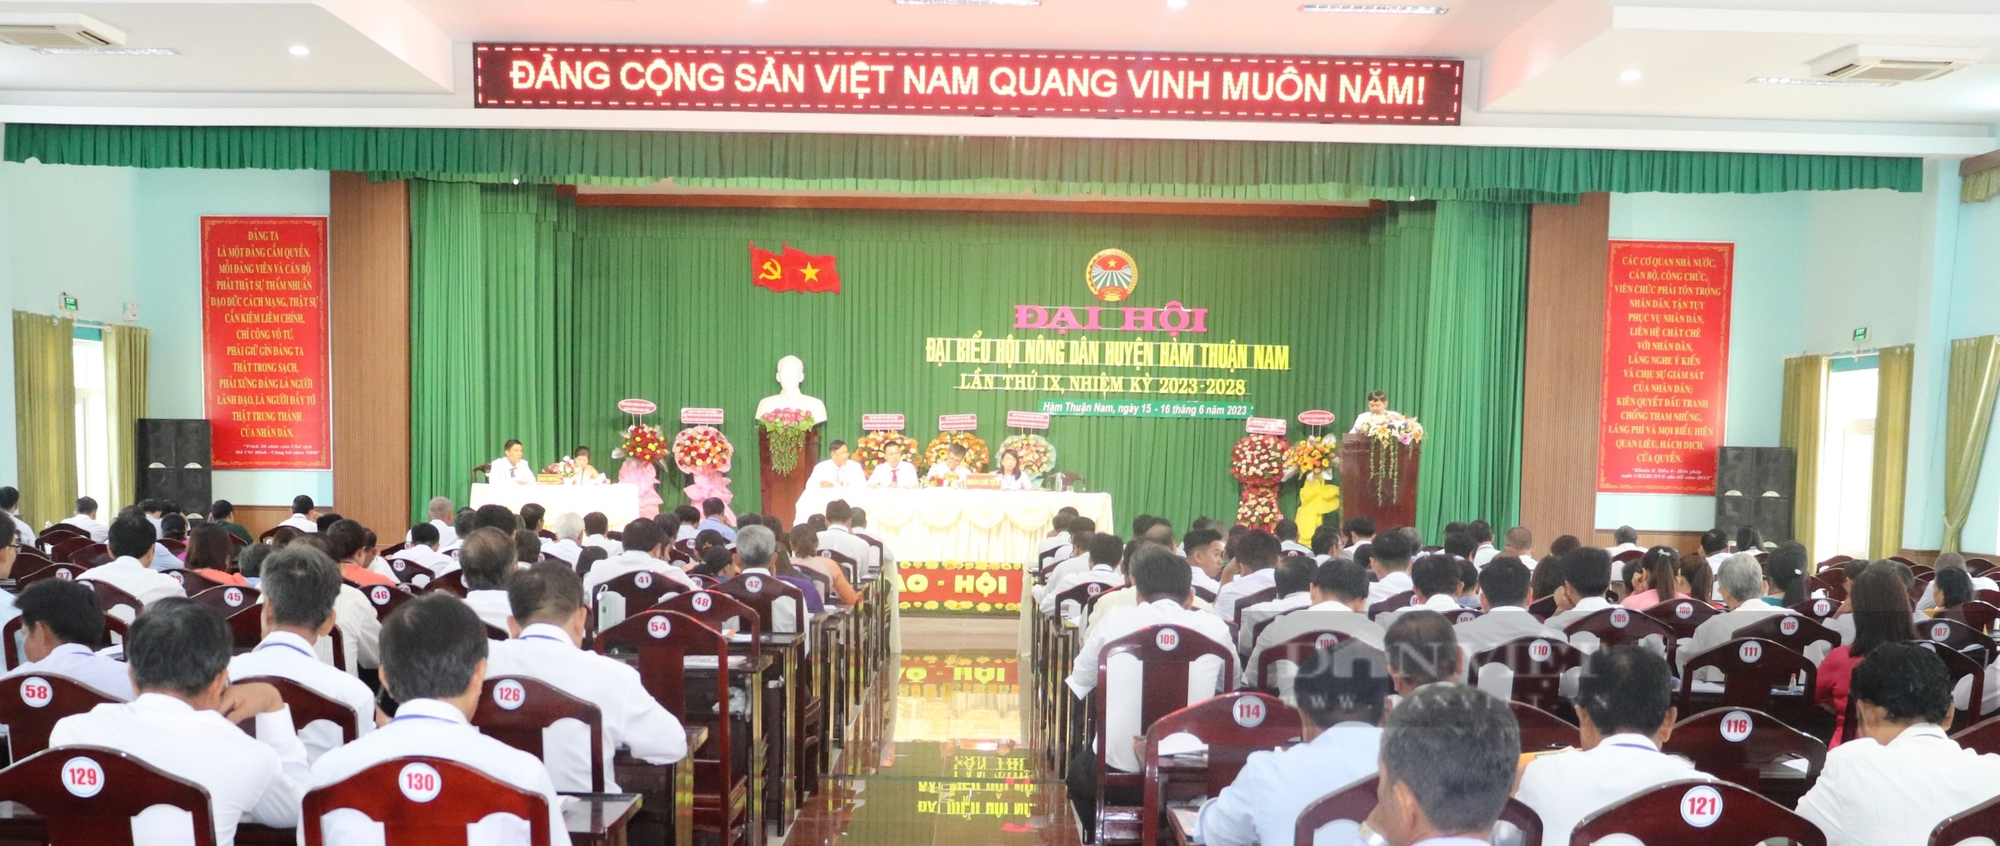 Bình Thuận: Ông Trần Xuân Thủ tái đắc cử chức Chủ tịch Hội Nông dân huyện Hàm Thuận Nam - Ảnh 1.